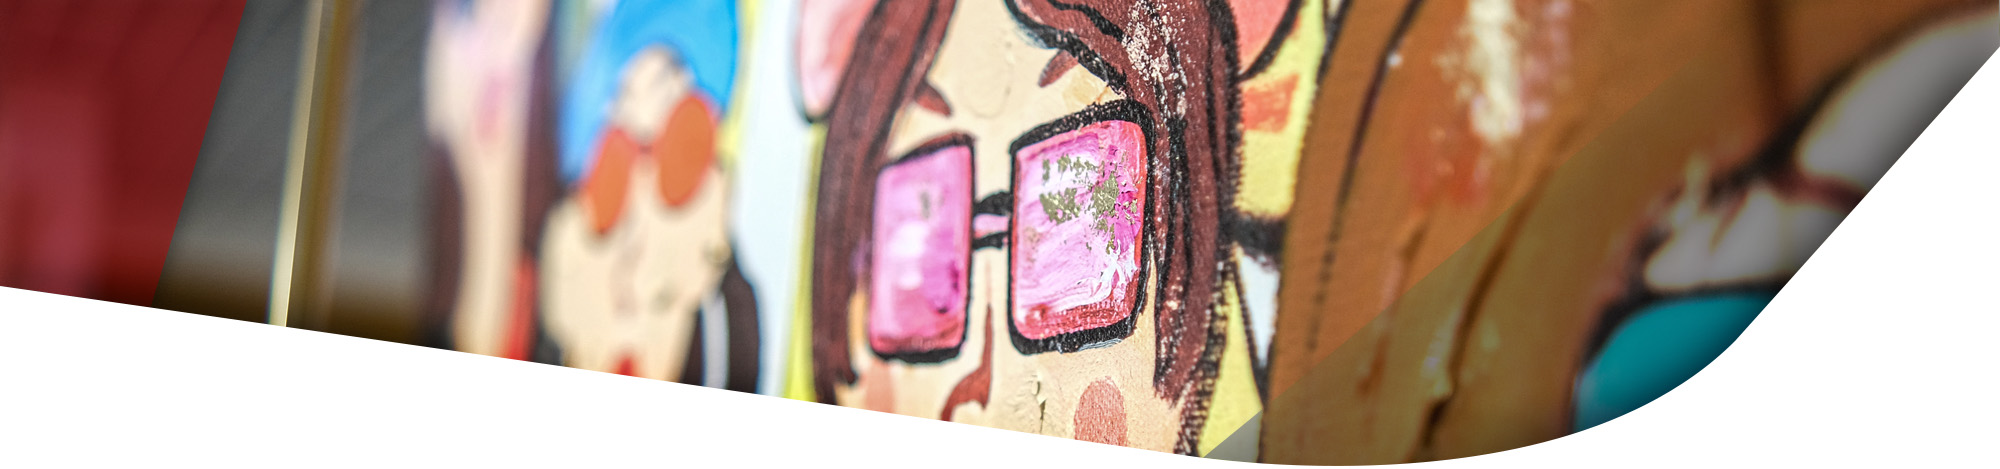 Gemälde mit bunten Farben und einer Frau mit Sonnenbrille in pink